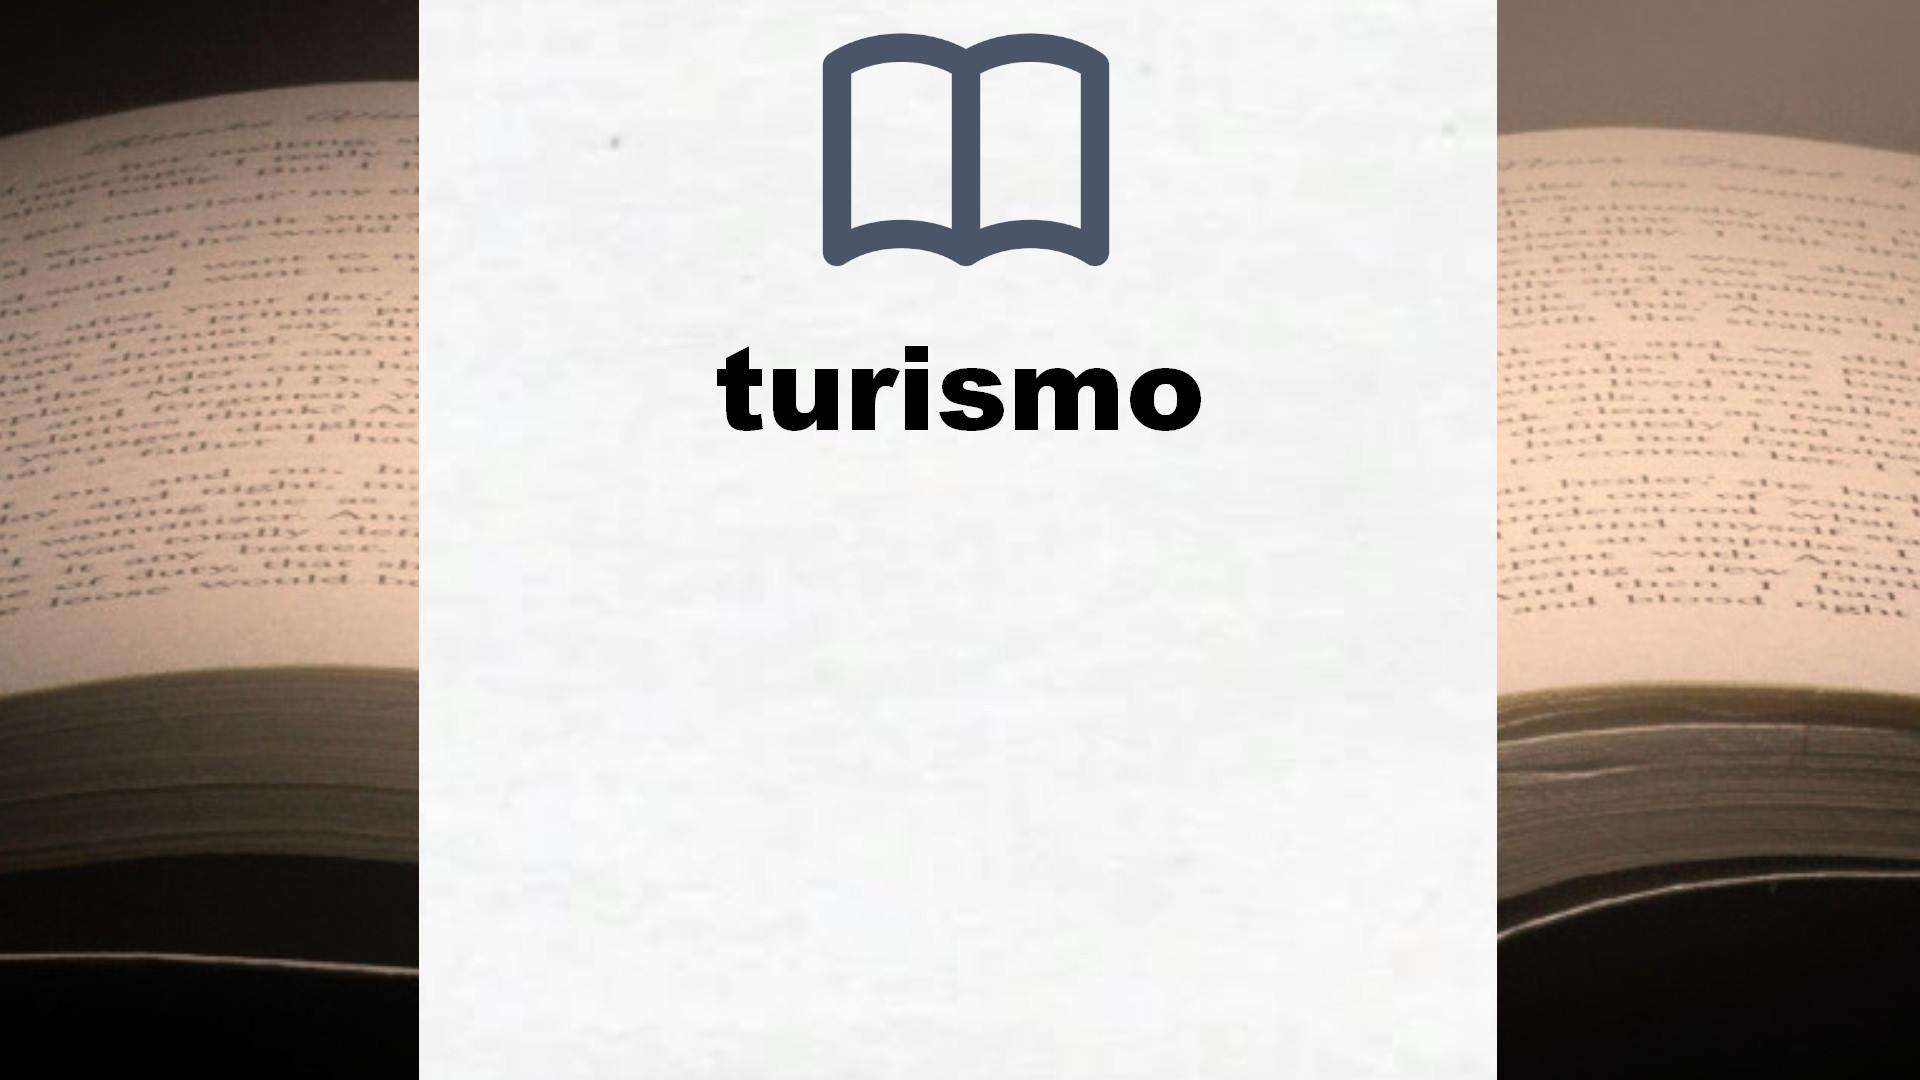 Libros sobre turismo